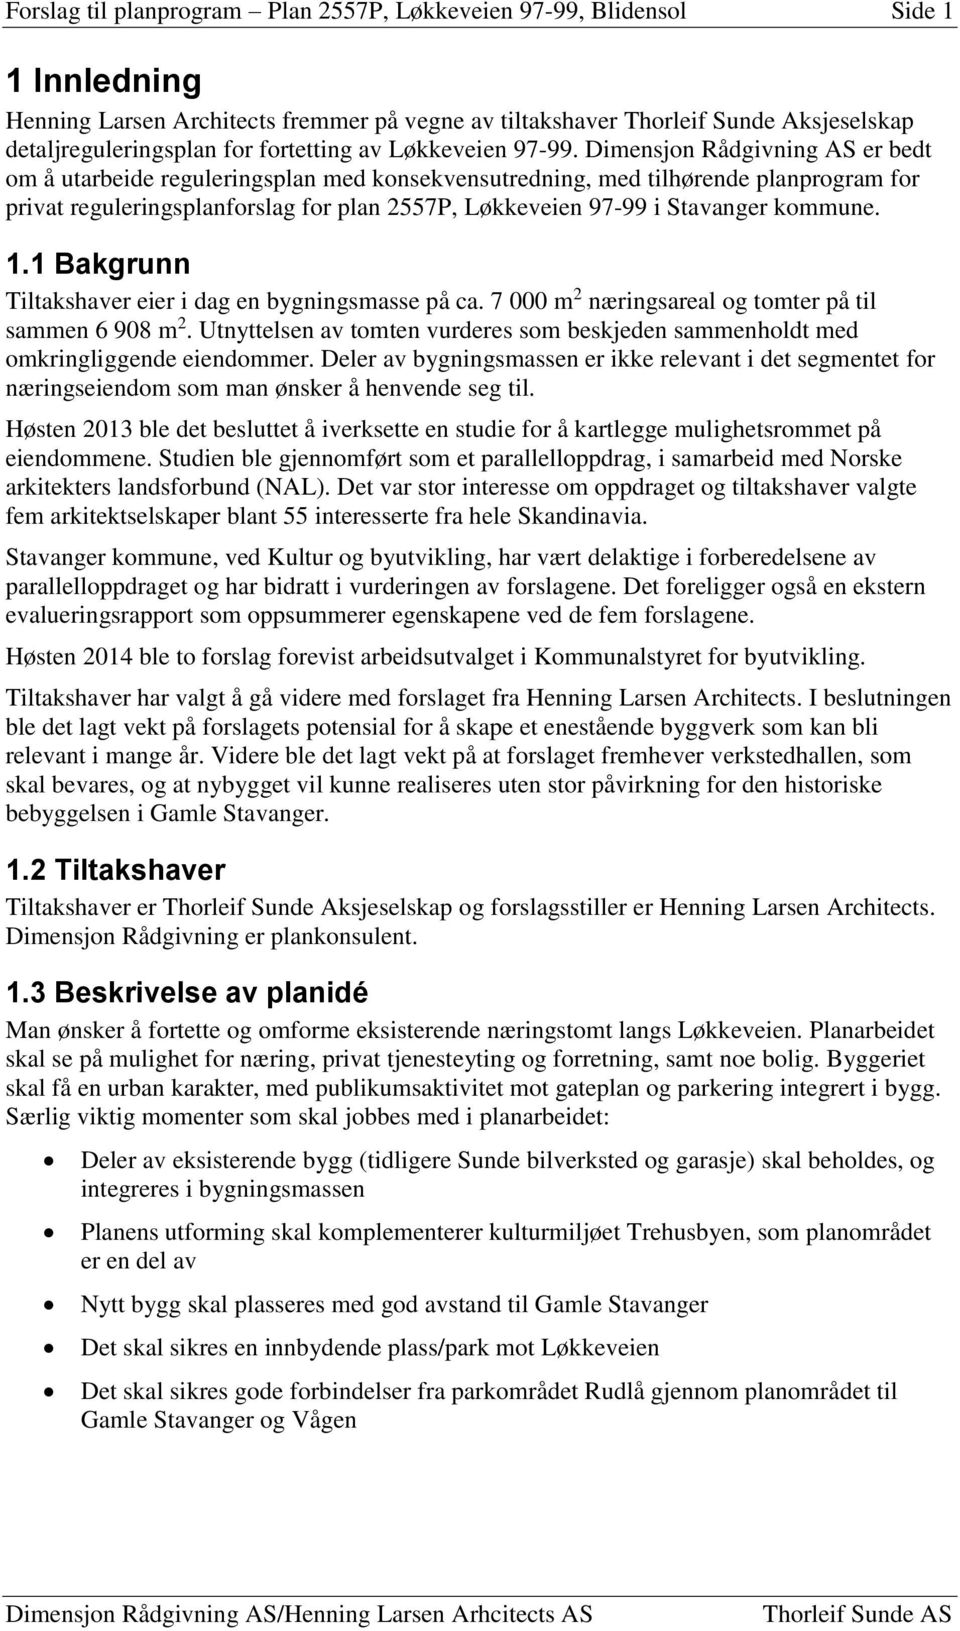 Dimensjon Rådgivning AS er bedt om å utarbeide reguleringsplan med konsekvensutredning, med tilhørende planprogram for privat reguleringsplanforslag for plan 2557P, Løkkeveien 97-99 i Stavanger